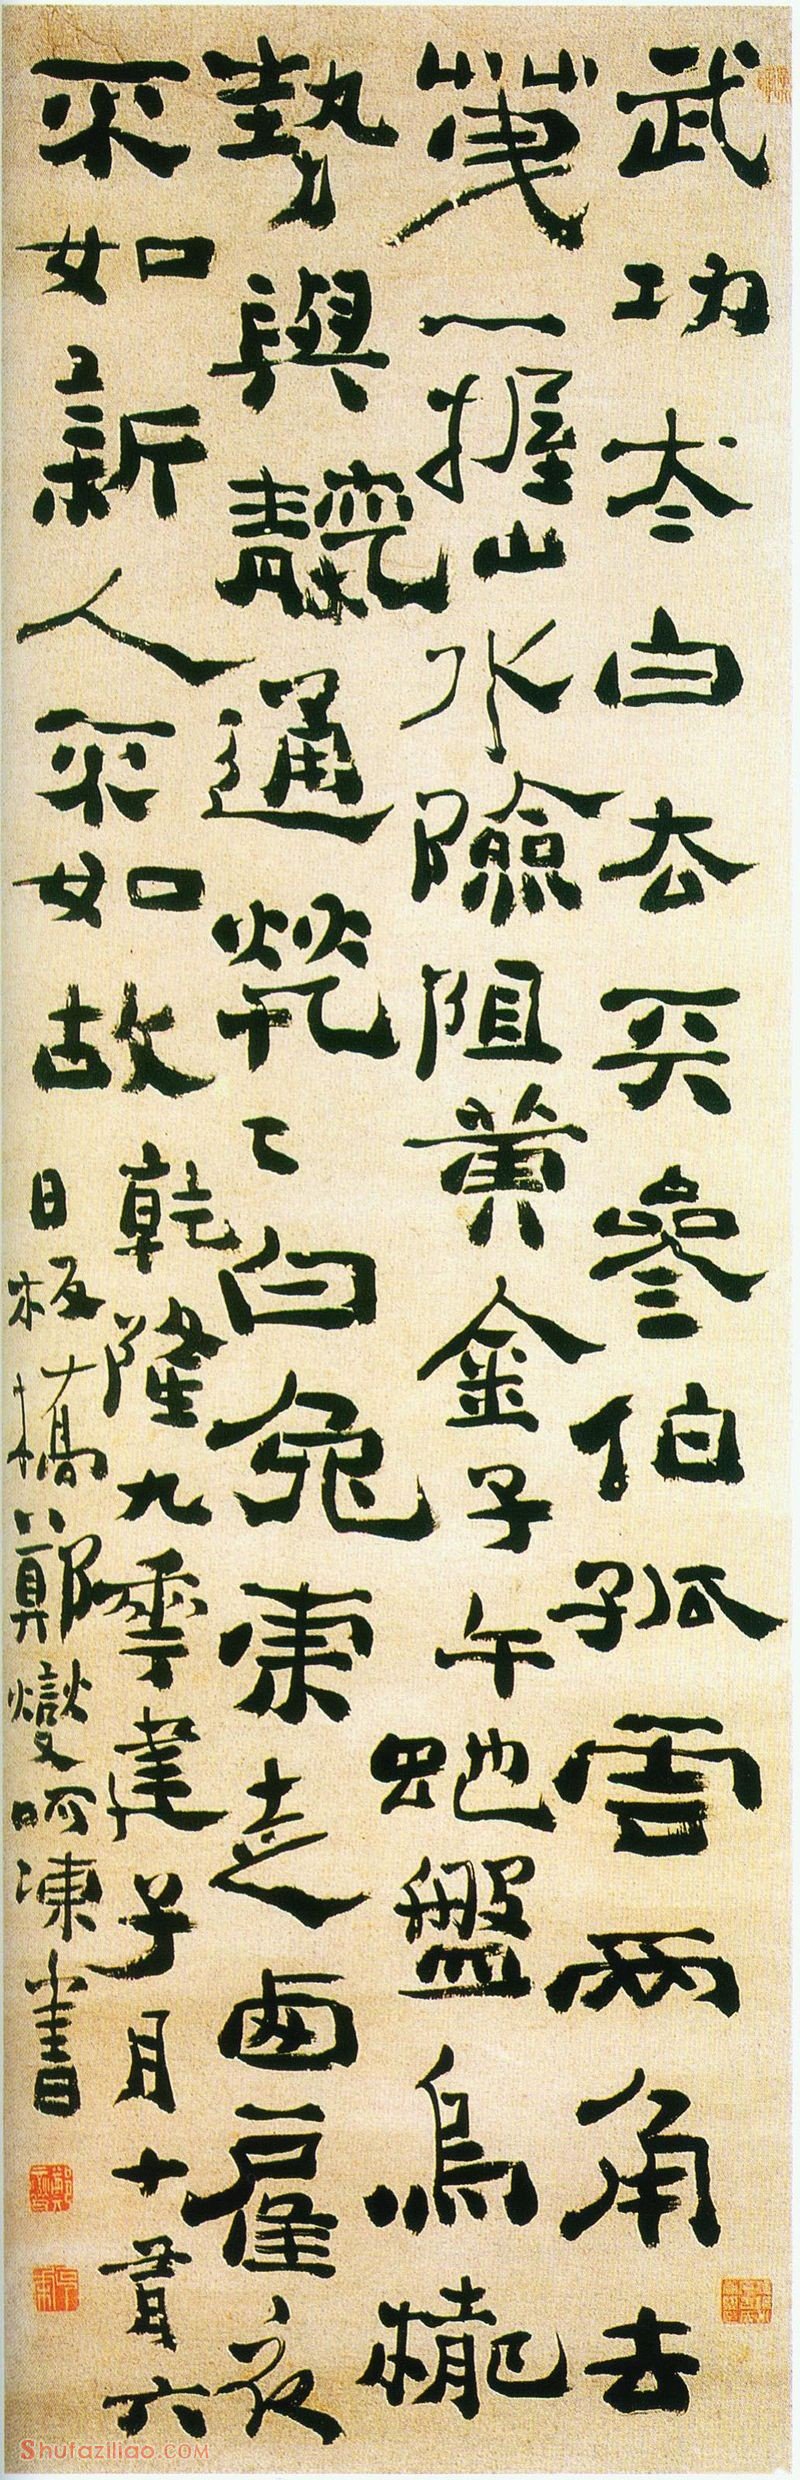 郑燮《歌谣轴》 纸本 中国国家博物馆藏